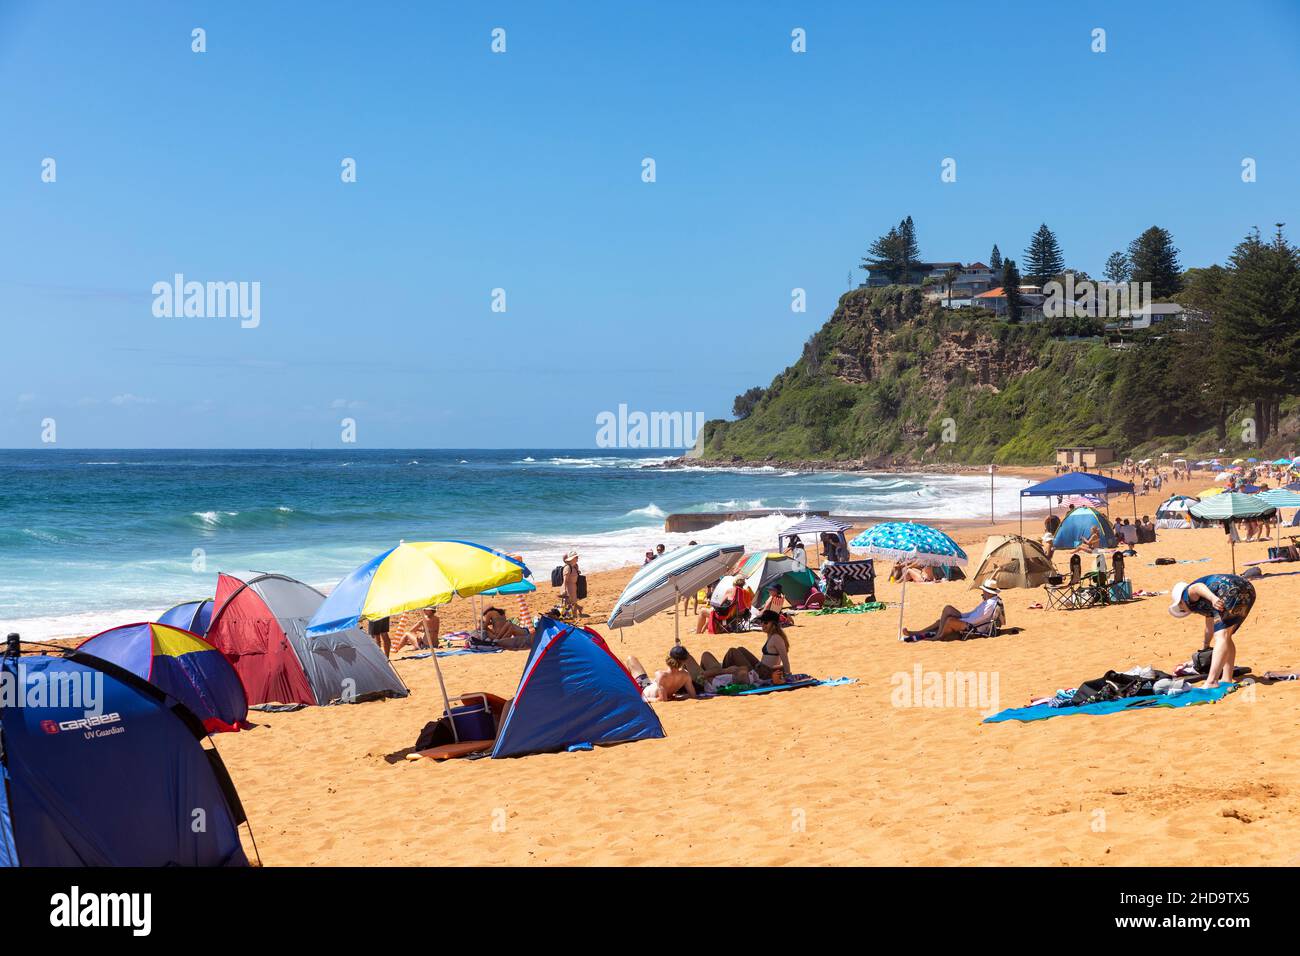 Newport Beach Sydney Australien an einem Sommertag mit Menschen, die die warme Sonne genießen, Sydney, NSW, Australien Stockfoto